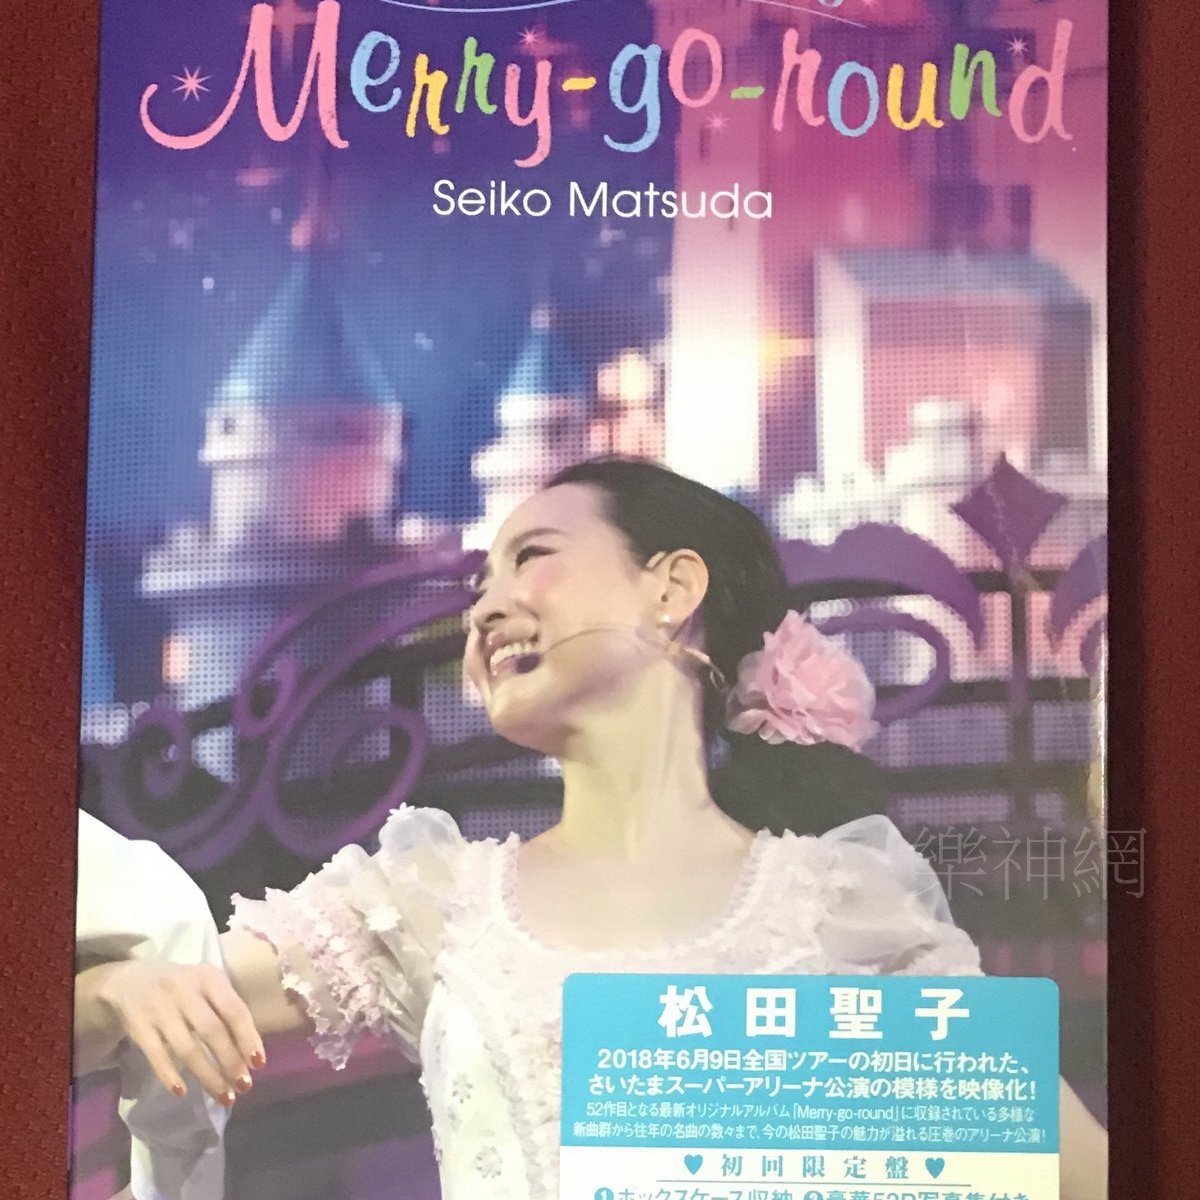 松田聖子Seiko Matsuda Concert Tour 2018 Merry-go-round 藍光Blu 